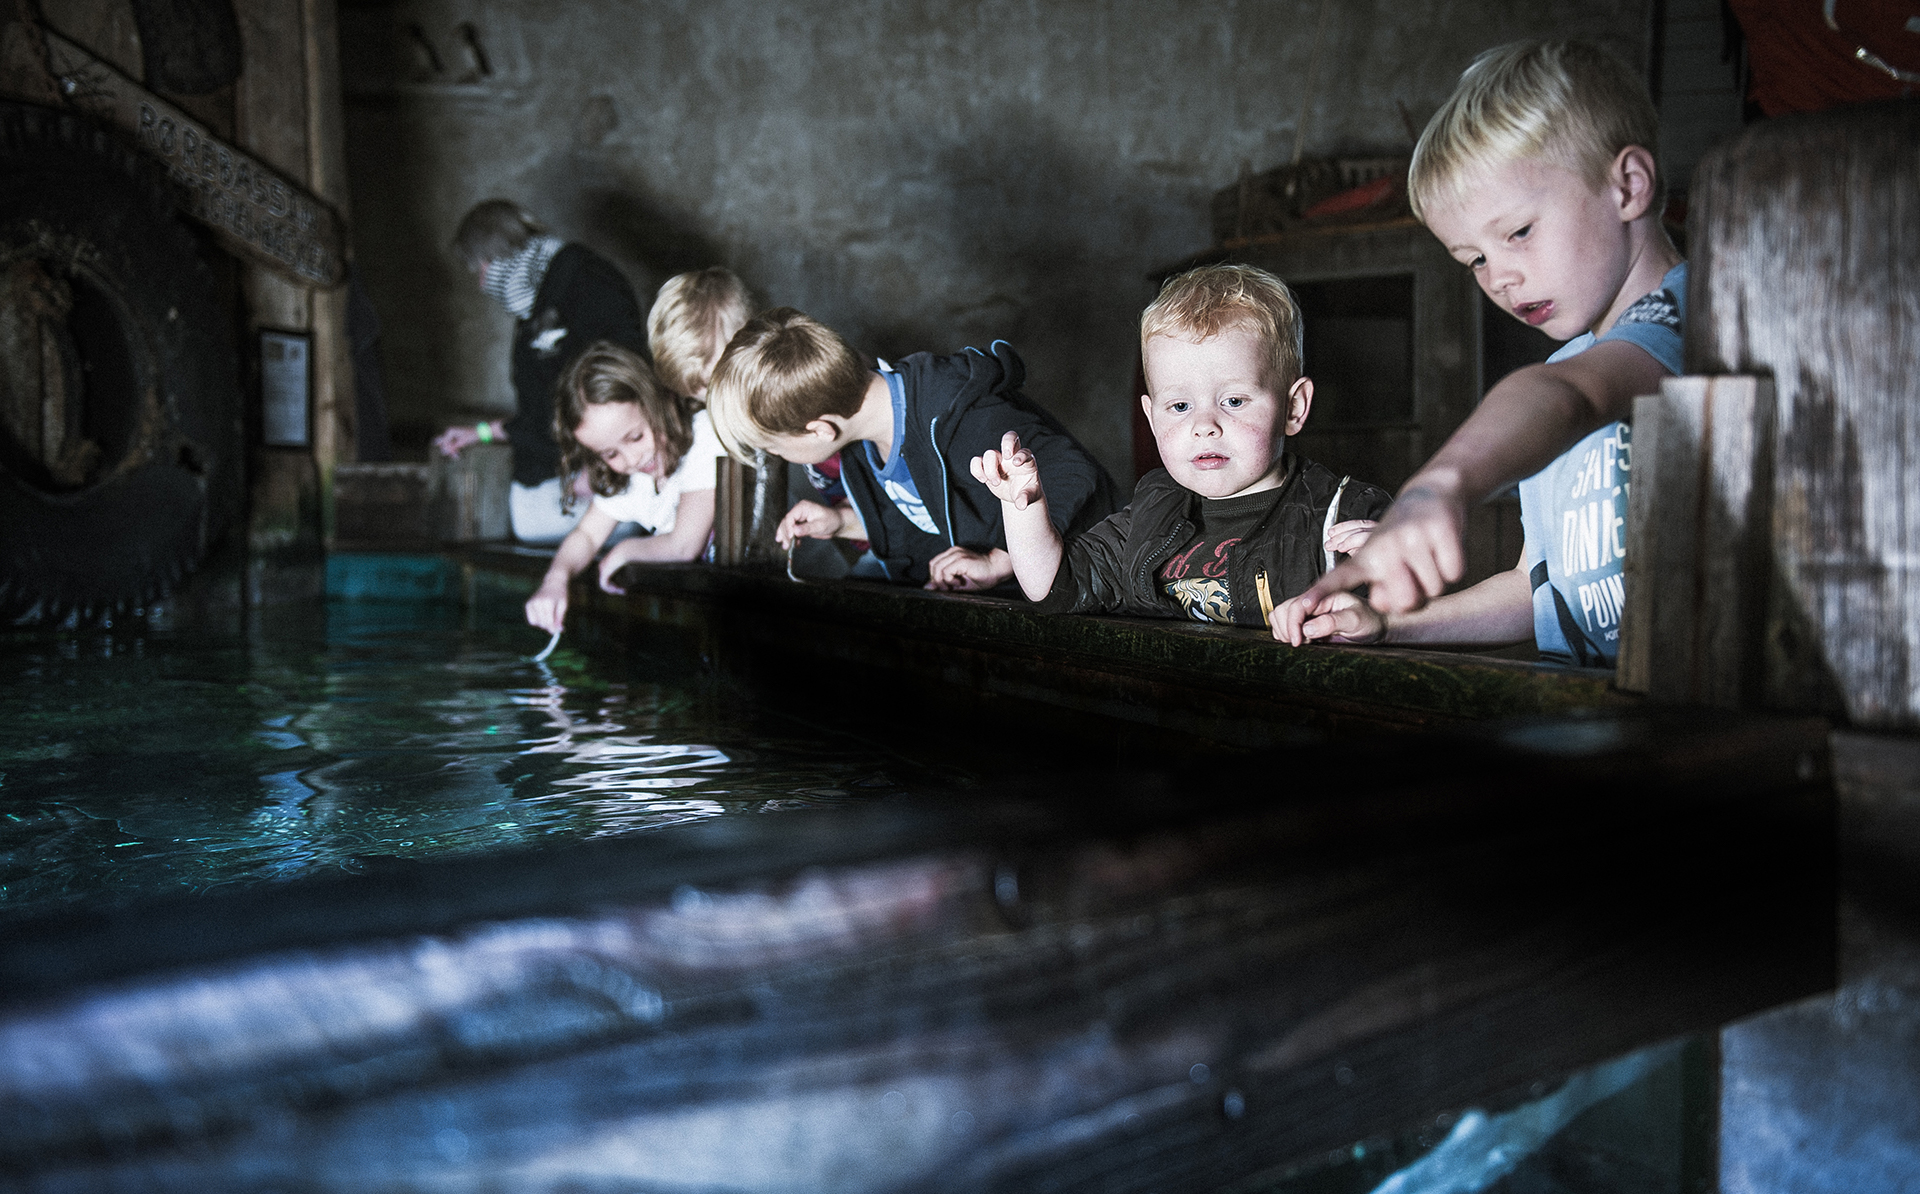 Jyllands Akvarium - Füttern der Haie